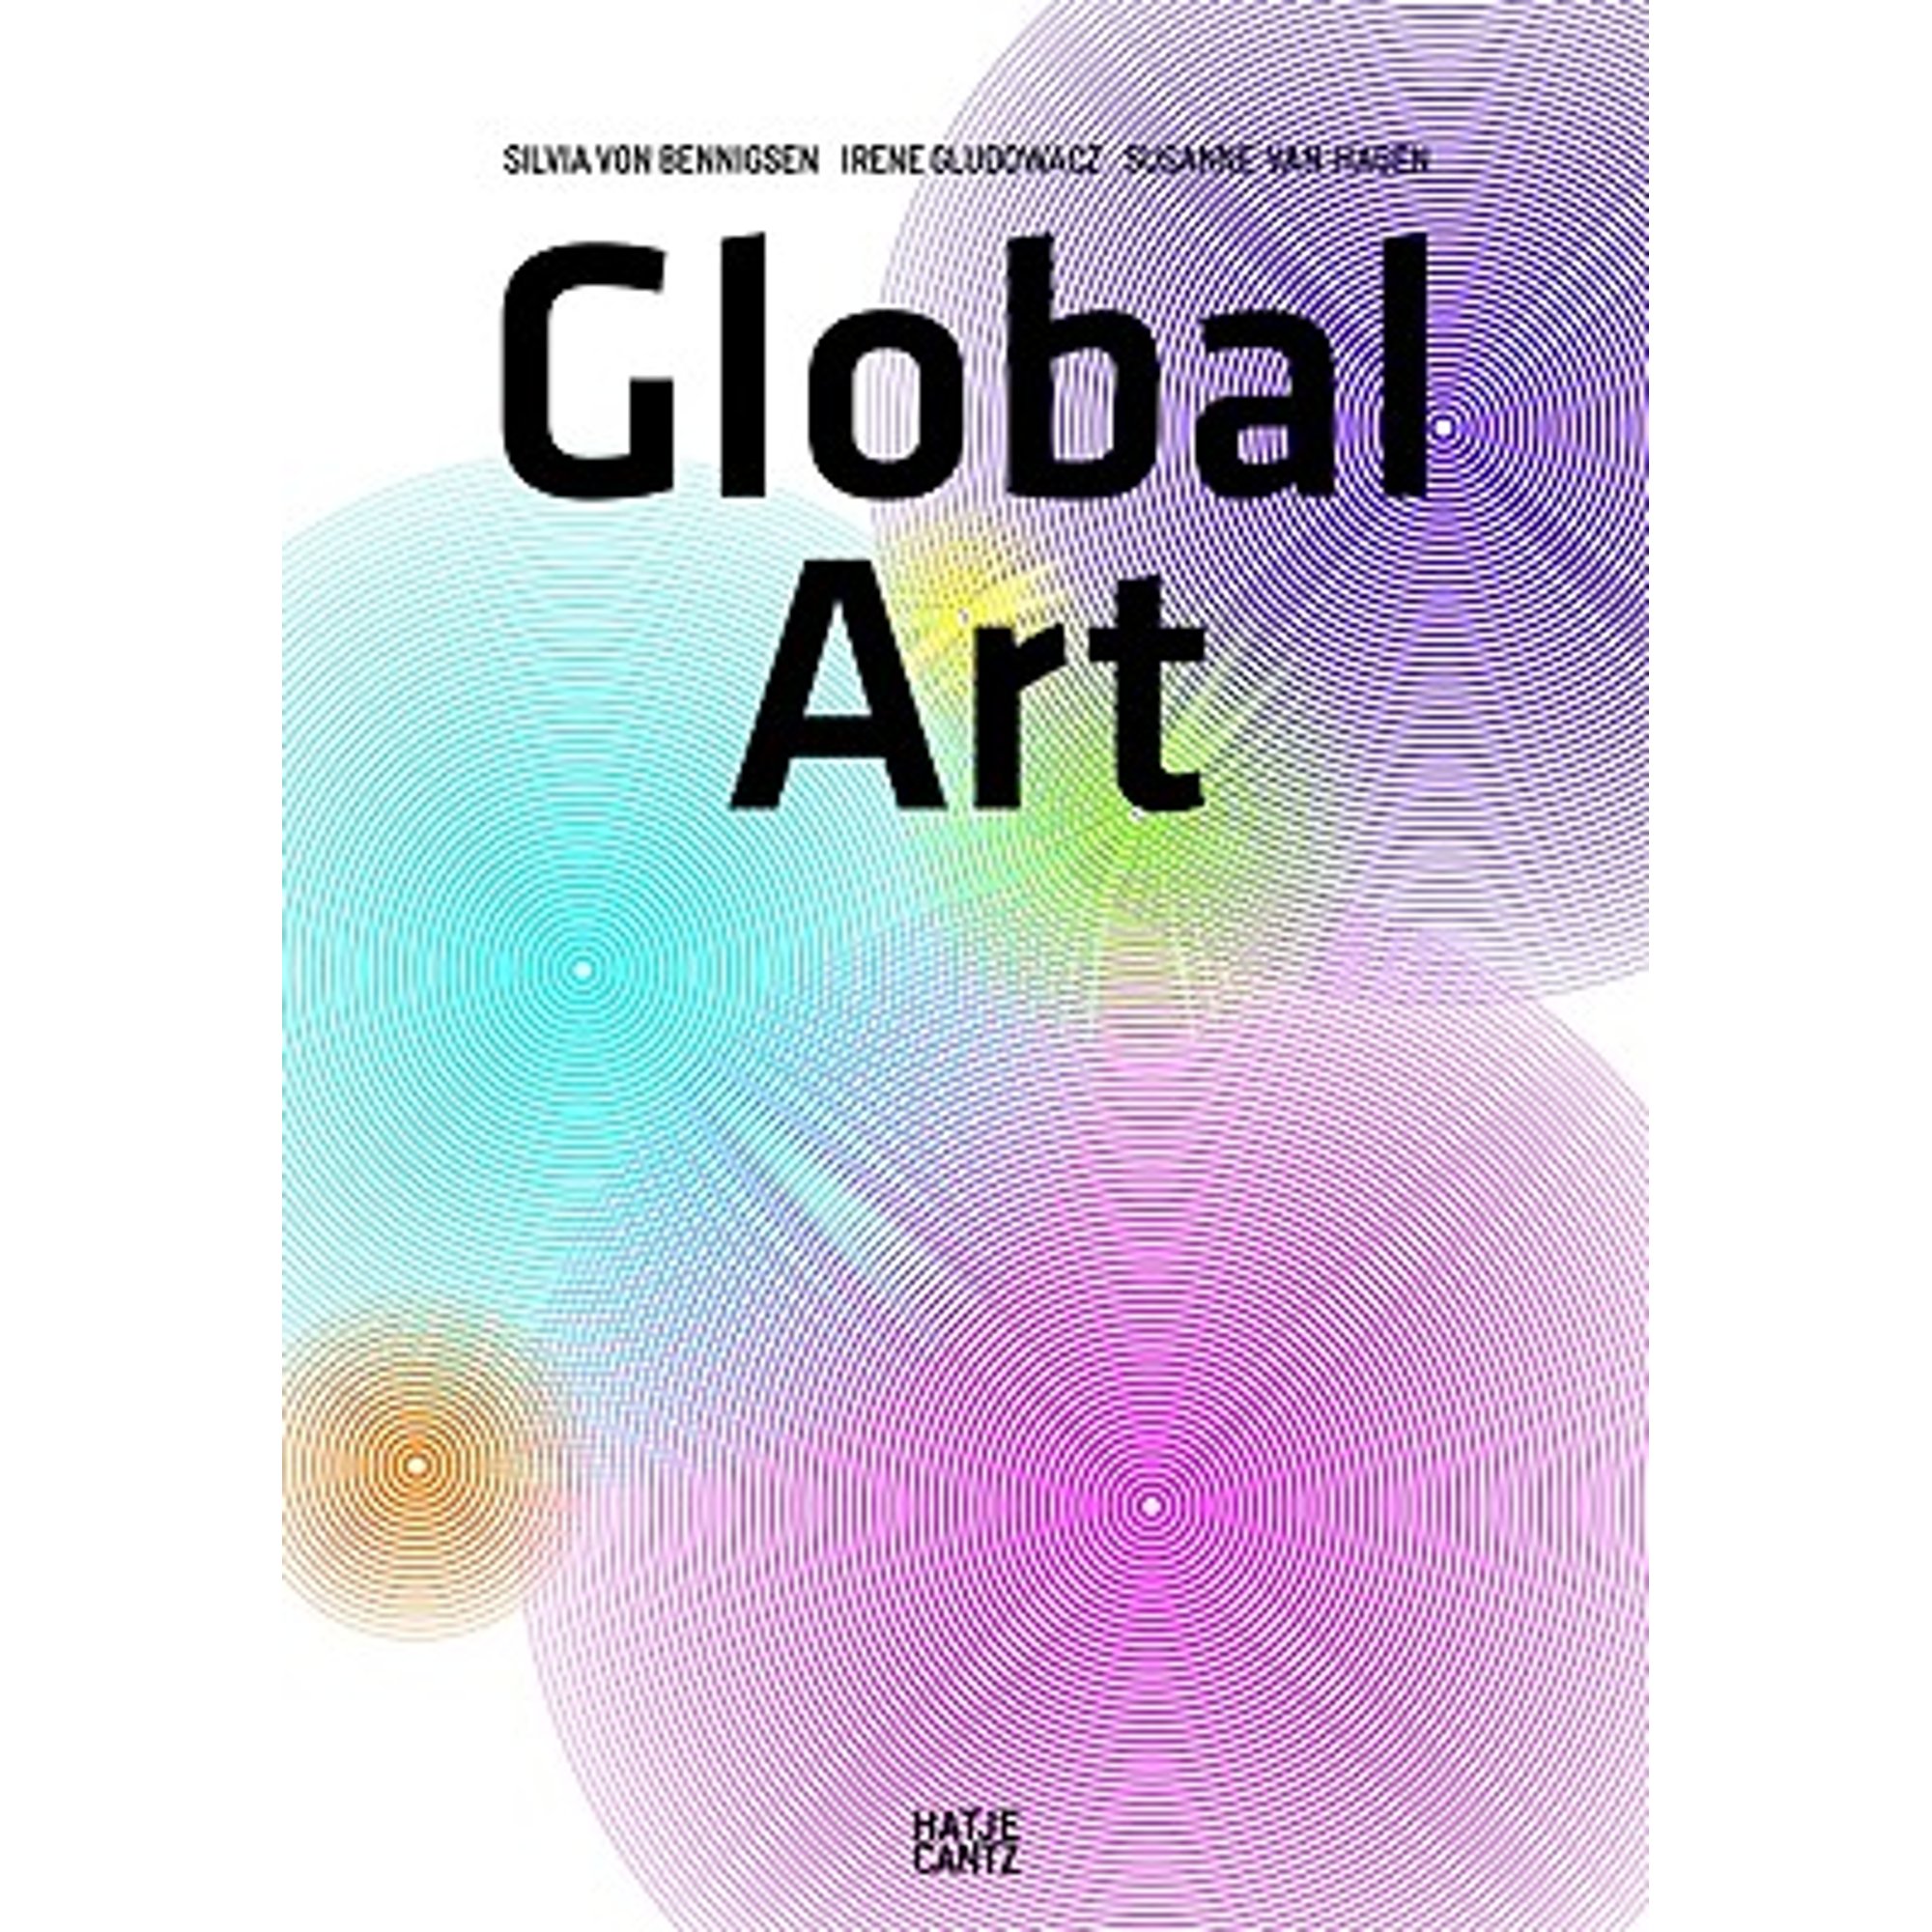 Pre-Owned Global Art (Paperback 9783775722018) by Irene Gludowacz, Silvia Von Bennigsen, Susanne Van Hagen - image 1 of 1